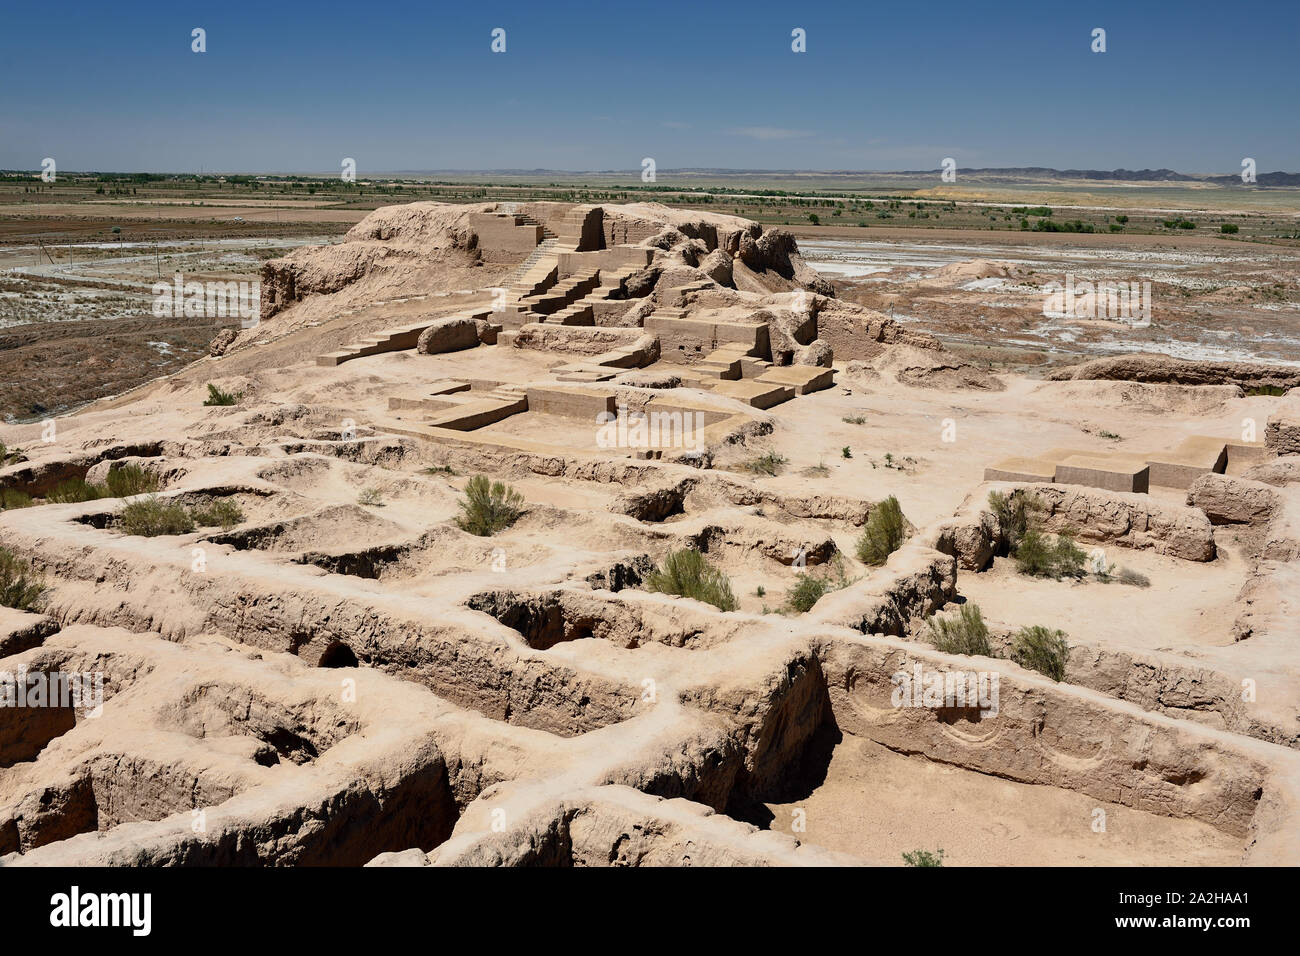 Die Ruinen Schlösser alte Choresm - Toprak - Kala, der kushan Empire, Usbekistan. Stockfoto